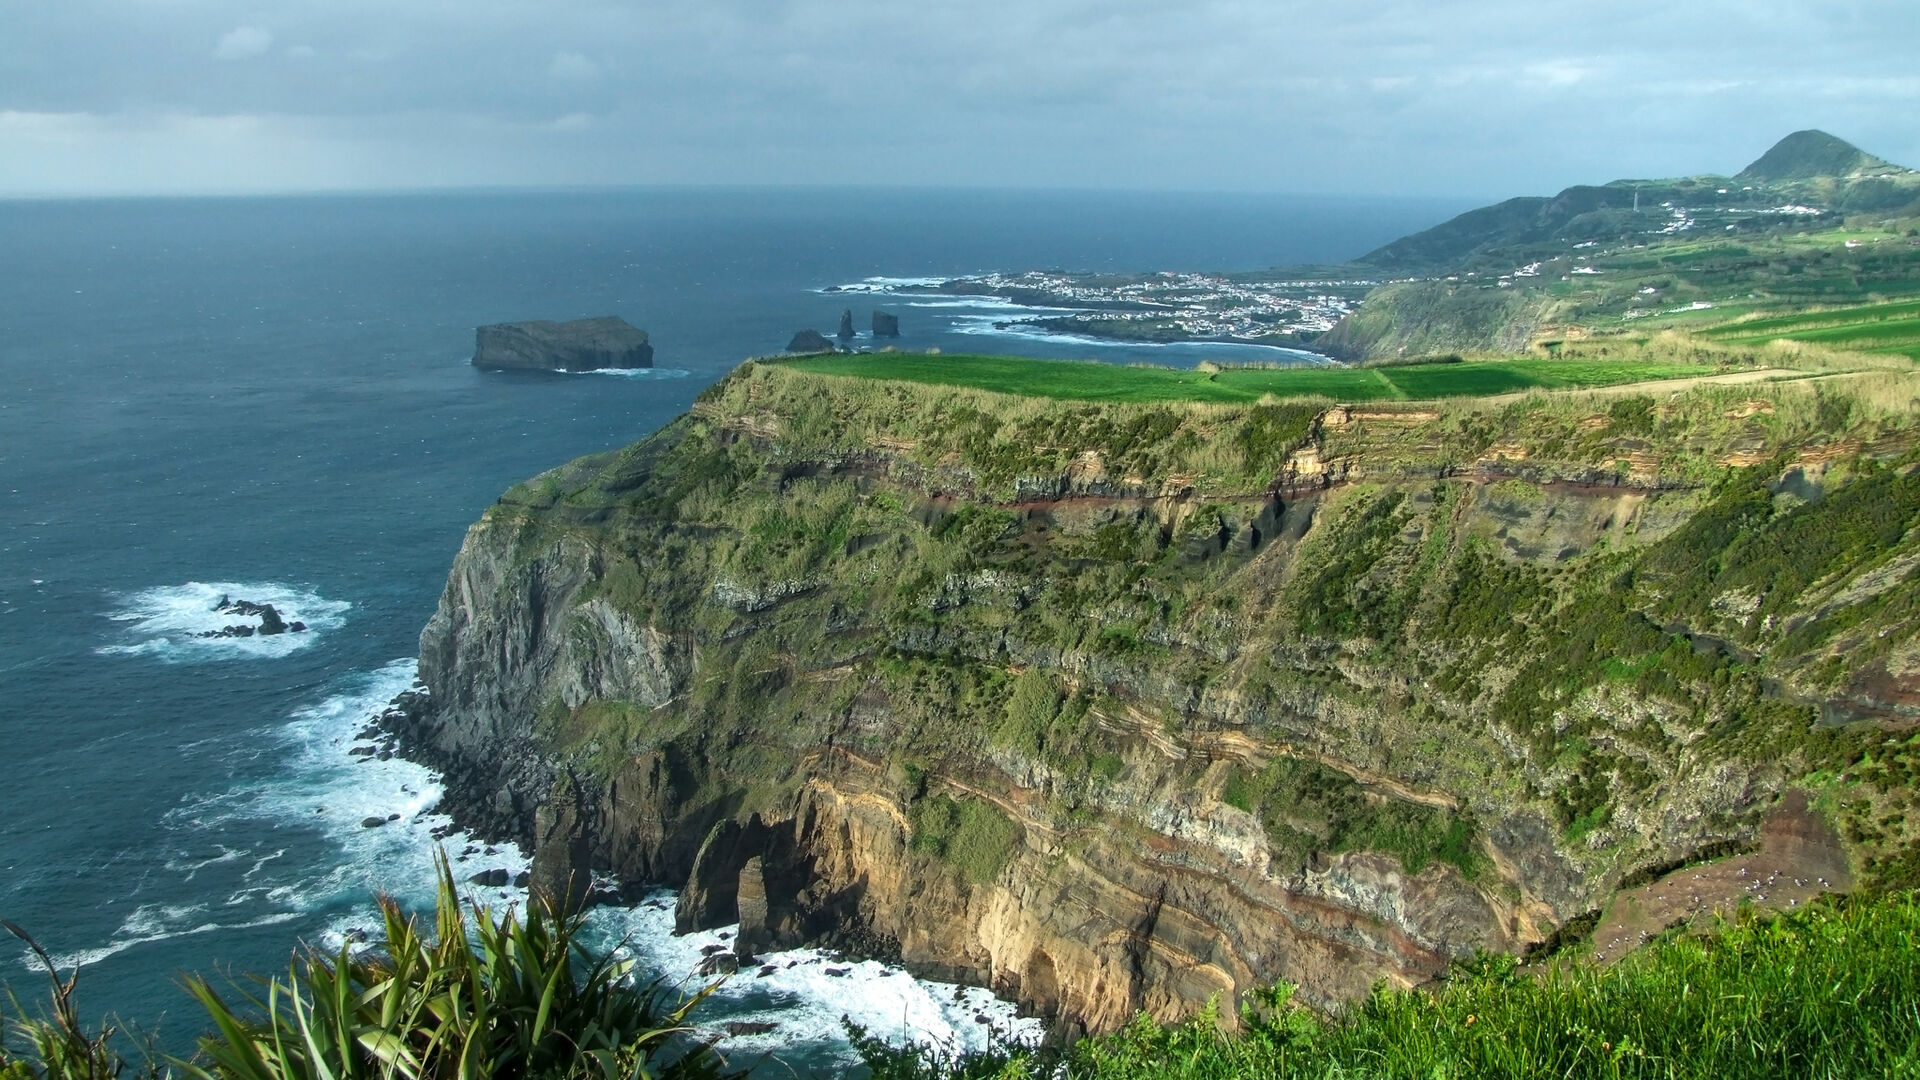 Bilde av vill, kyst på Azorene med klipper og hav